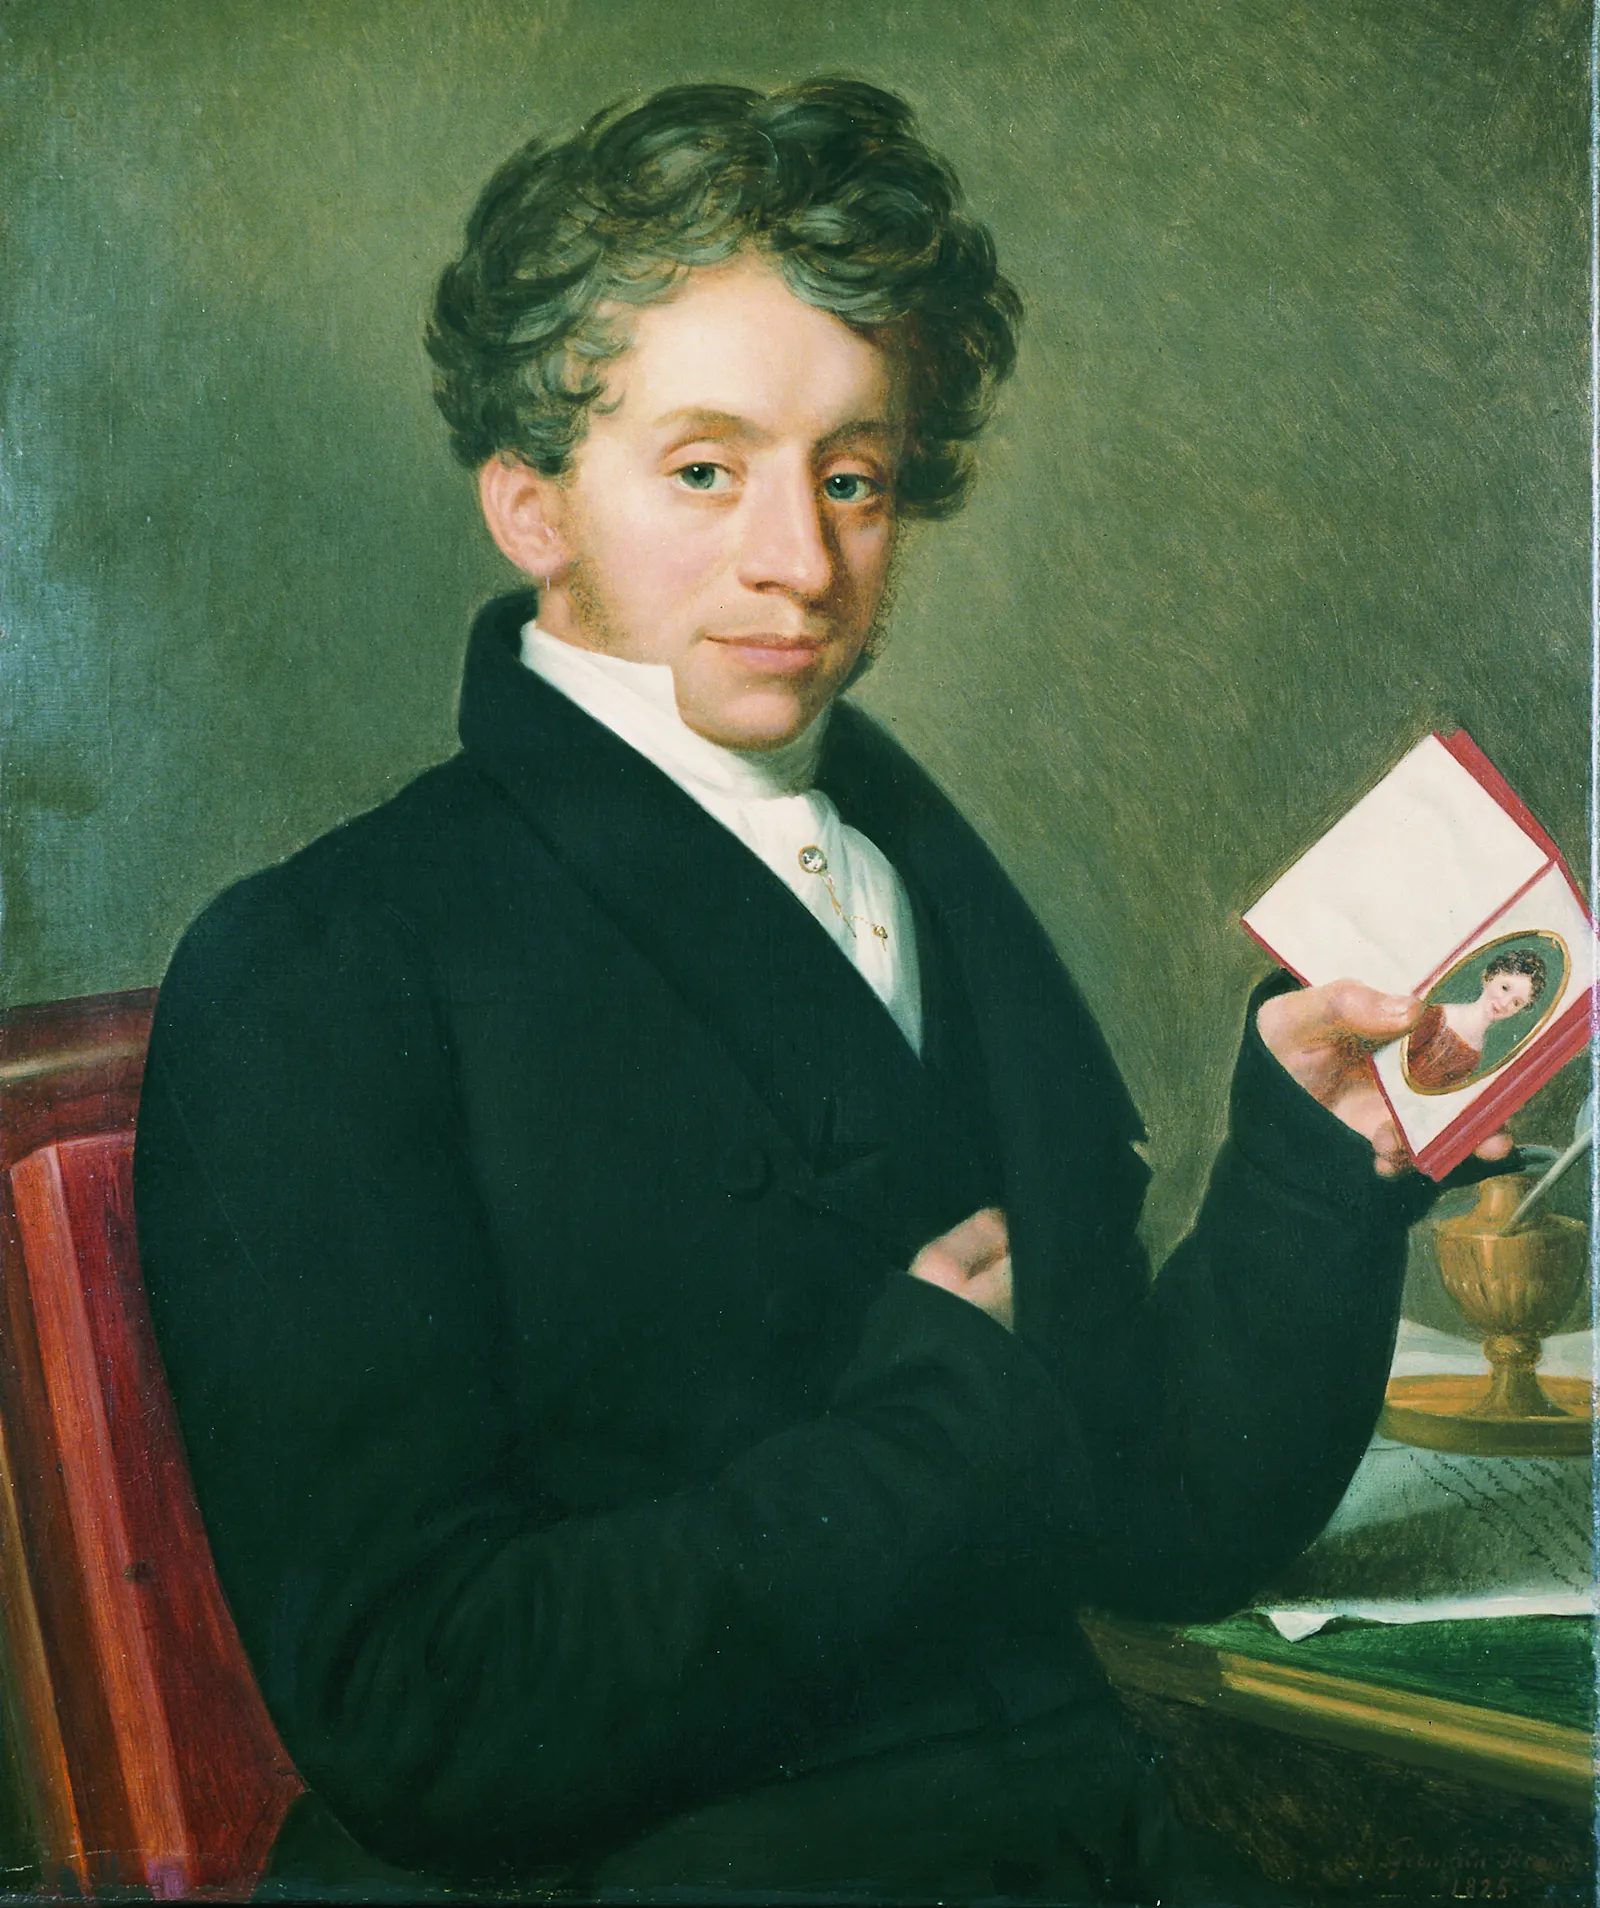 Öl-Gemälde von Jean-Baptiste Louis Germain zeigt Sekthaus-Gründer Georg Christian Kessler, der von 1787 bis 1842 gelebt hat.